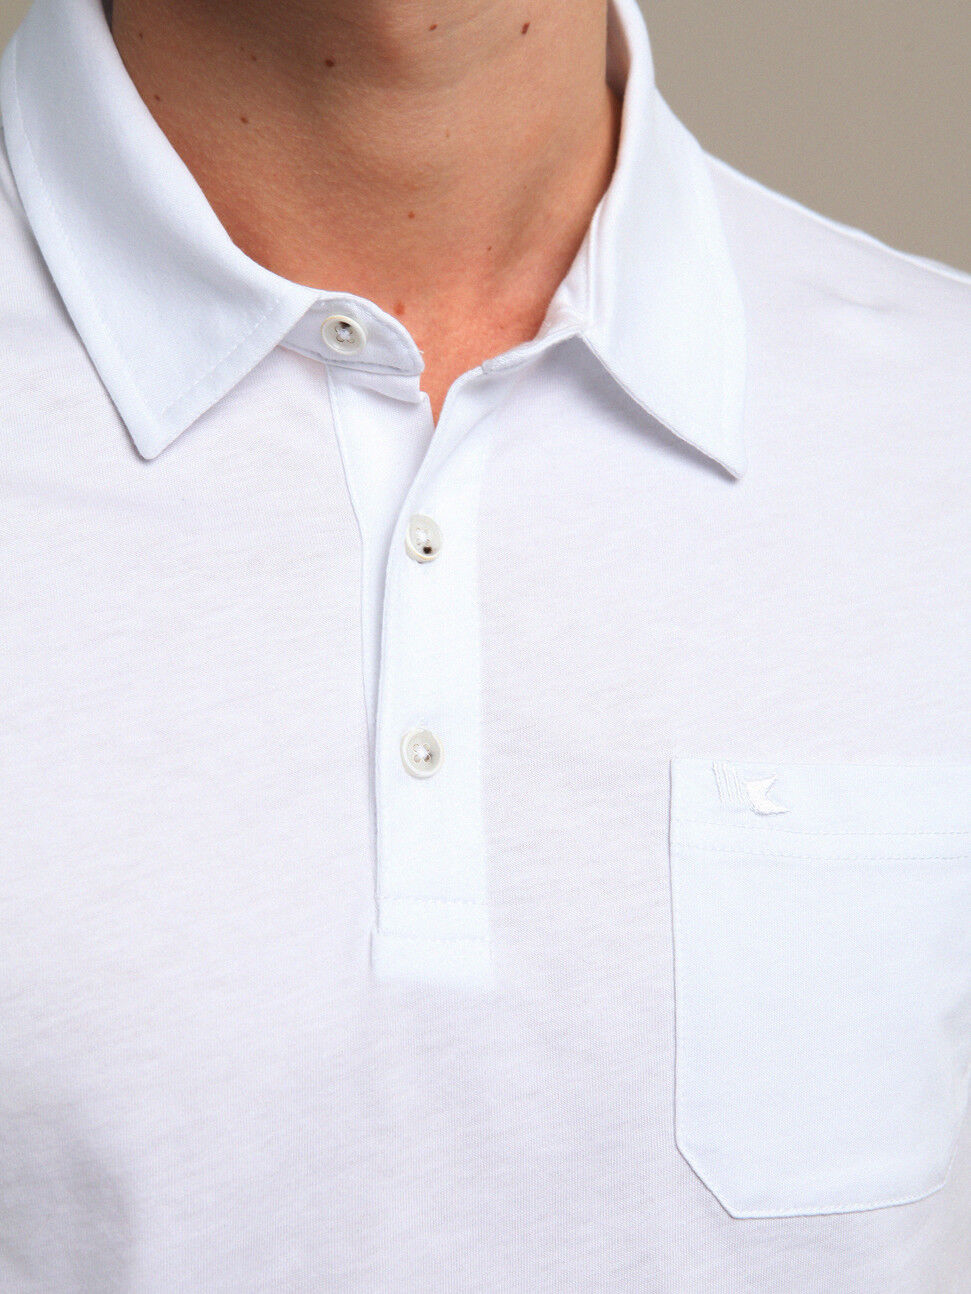 Beyaz Düz Polo Yaka %100 Pamuk T-Shirt